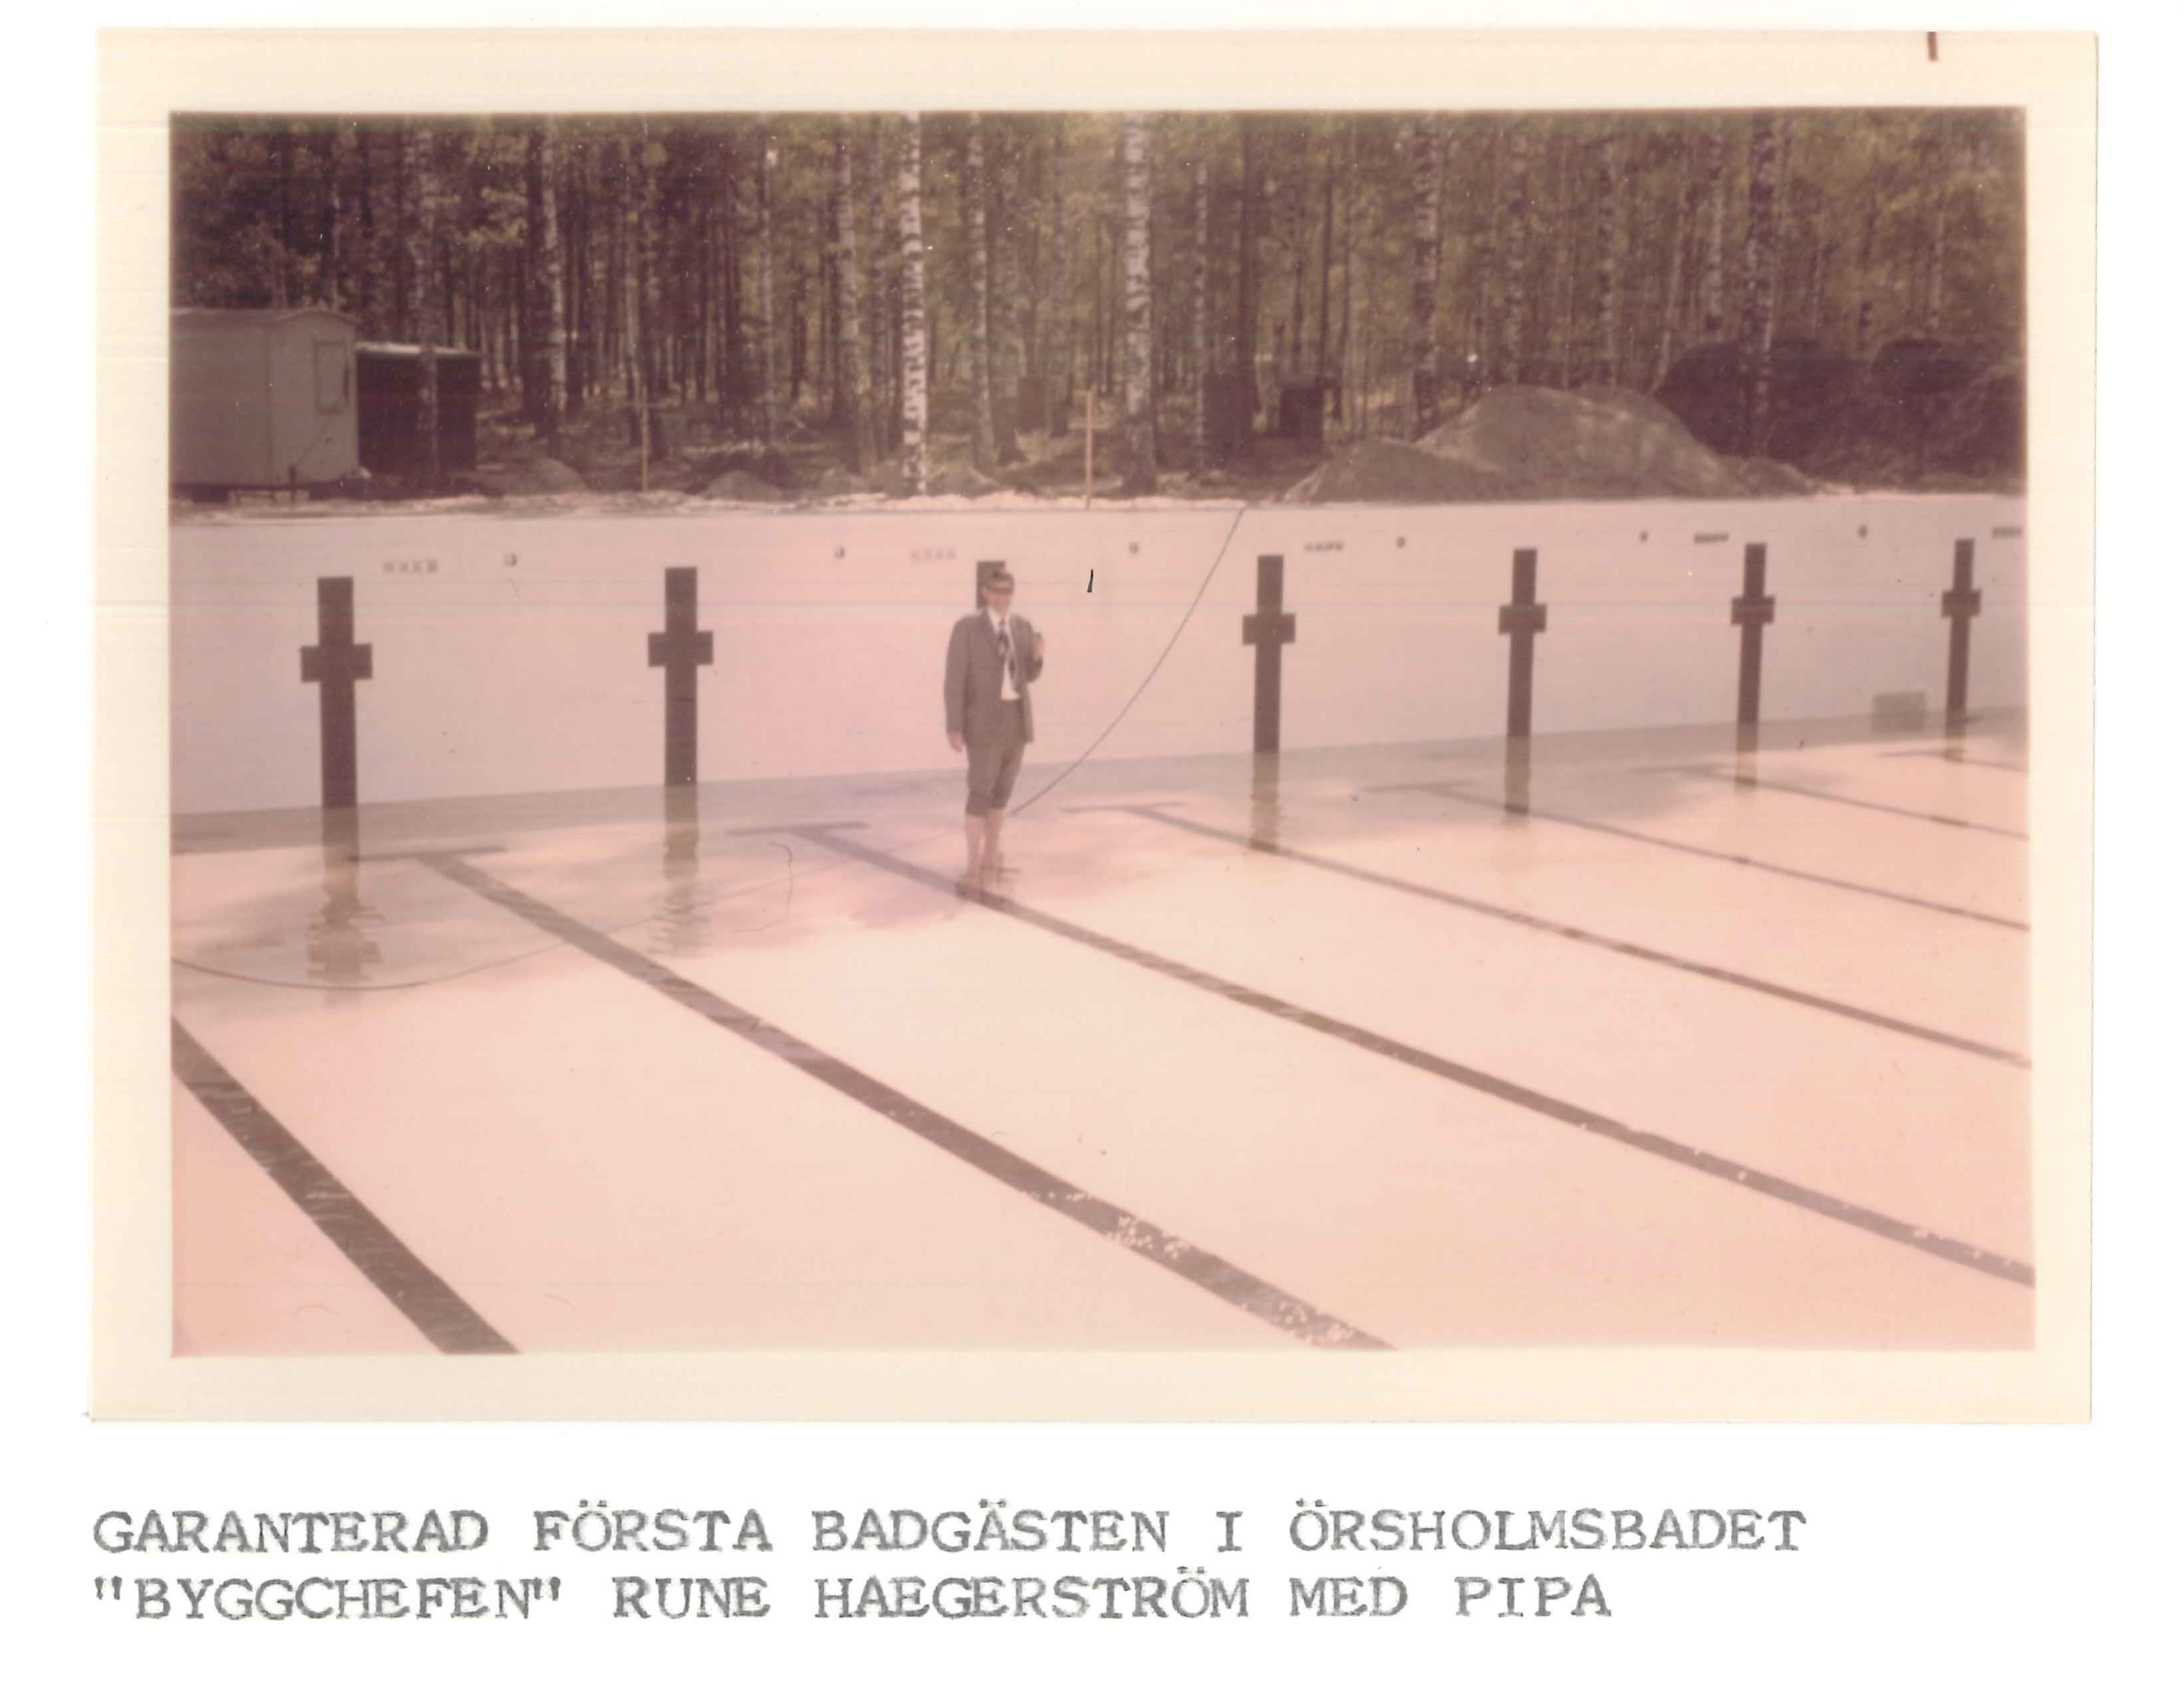 Foto av första badgästen Örsholmsbadet. Rune Haegerström står med vatten till anklarna.